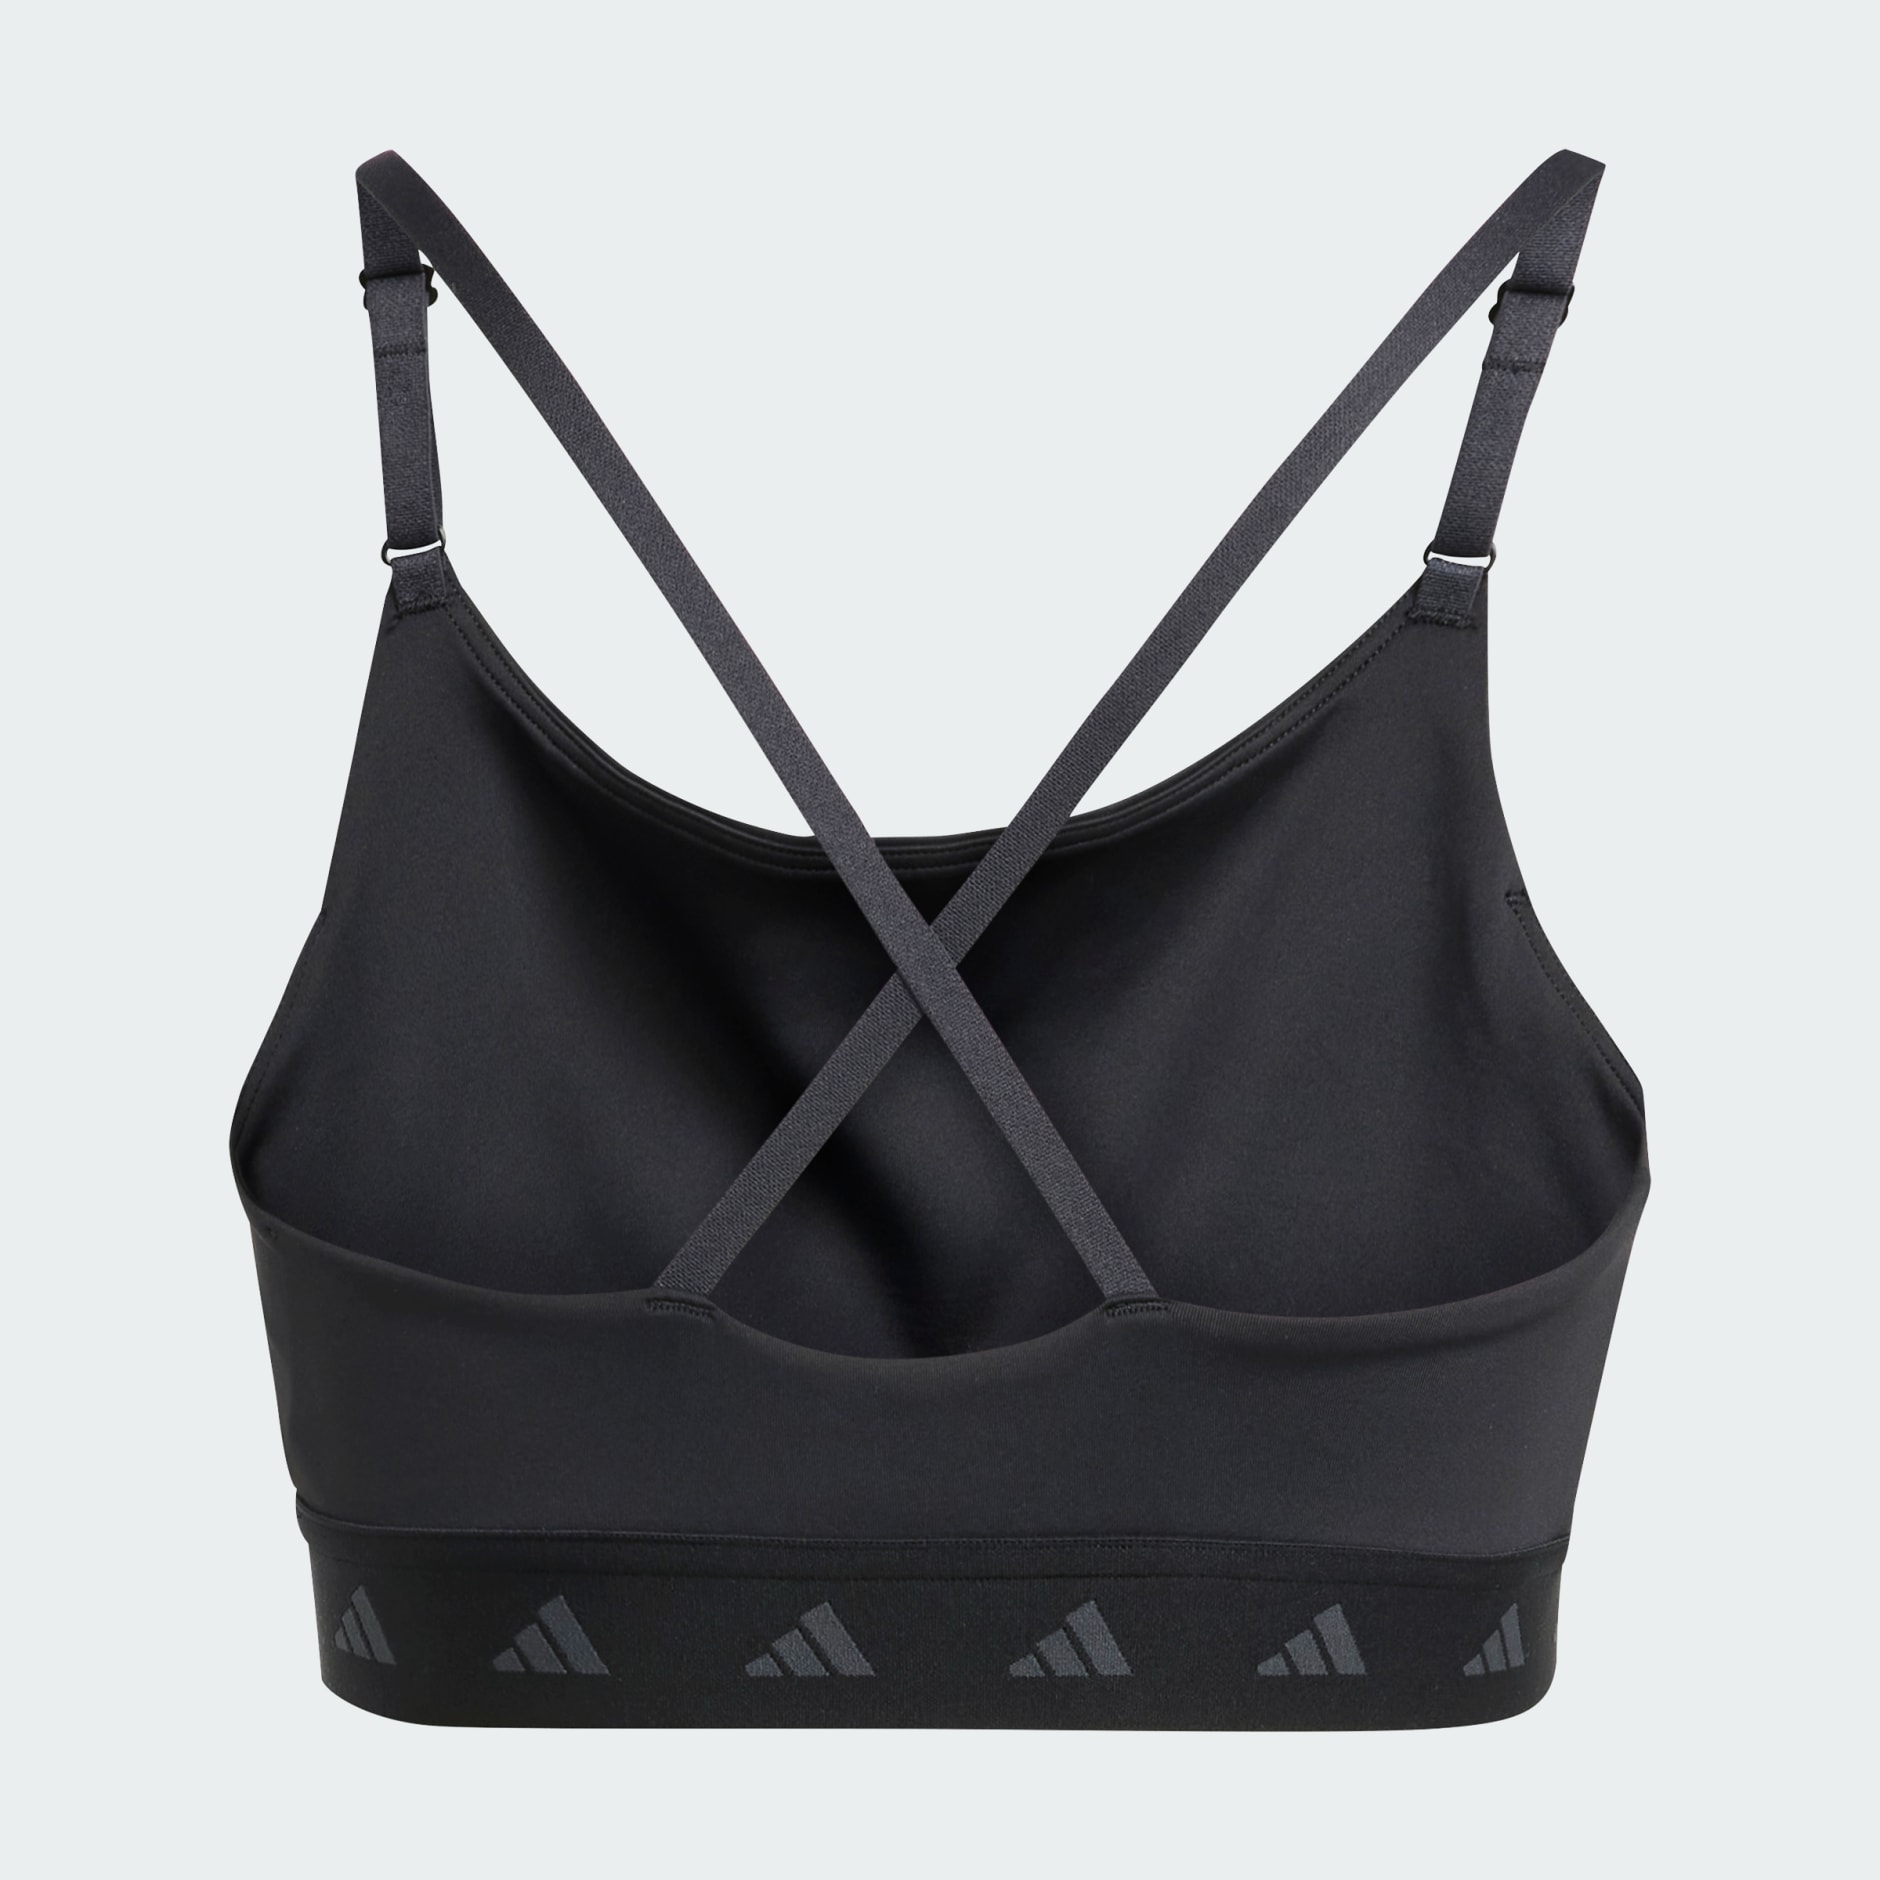 adidas Sports bra AEROREACT with mesh in white/ black